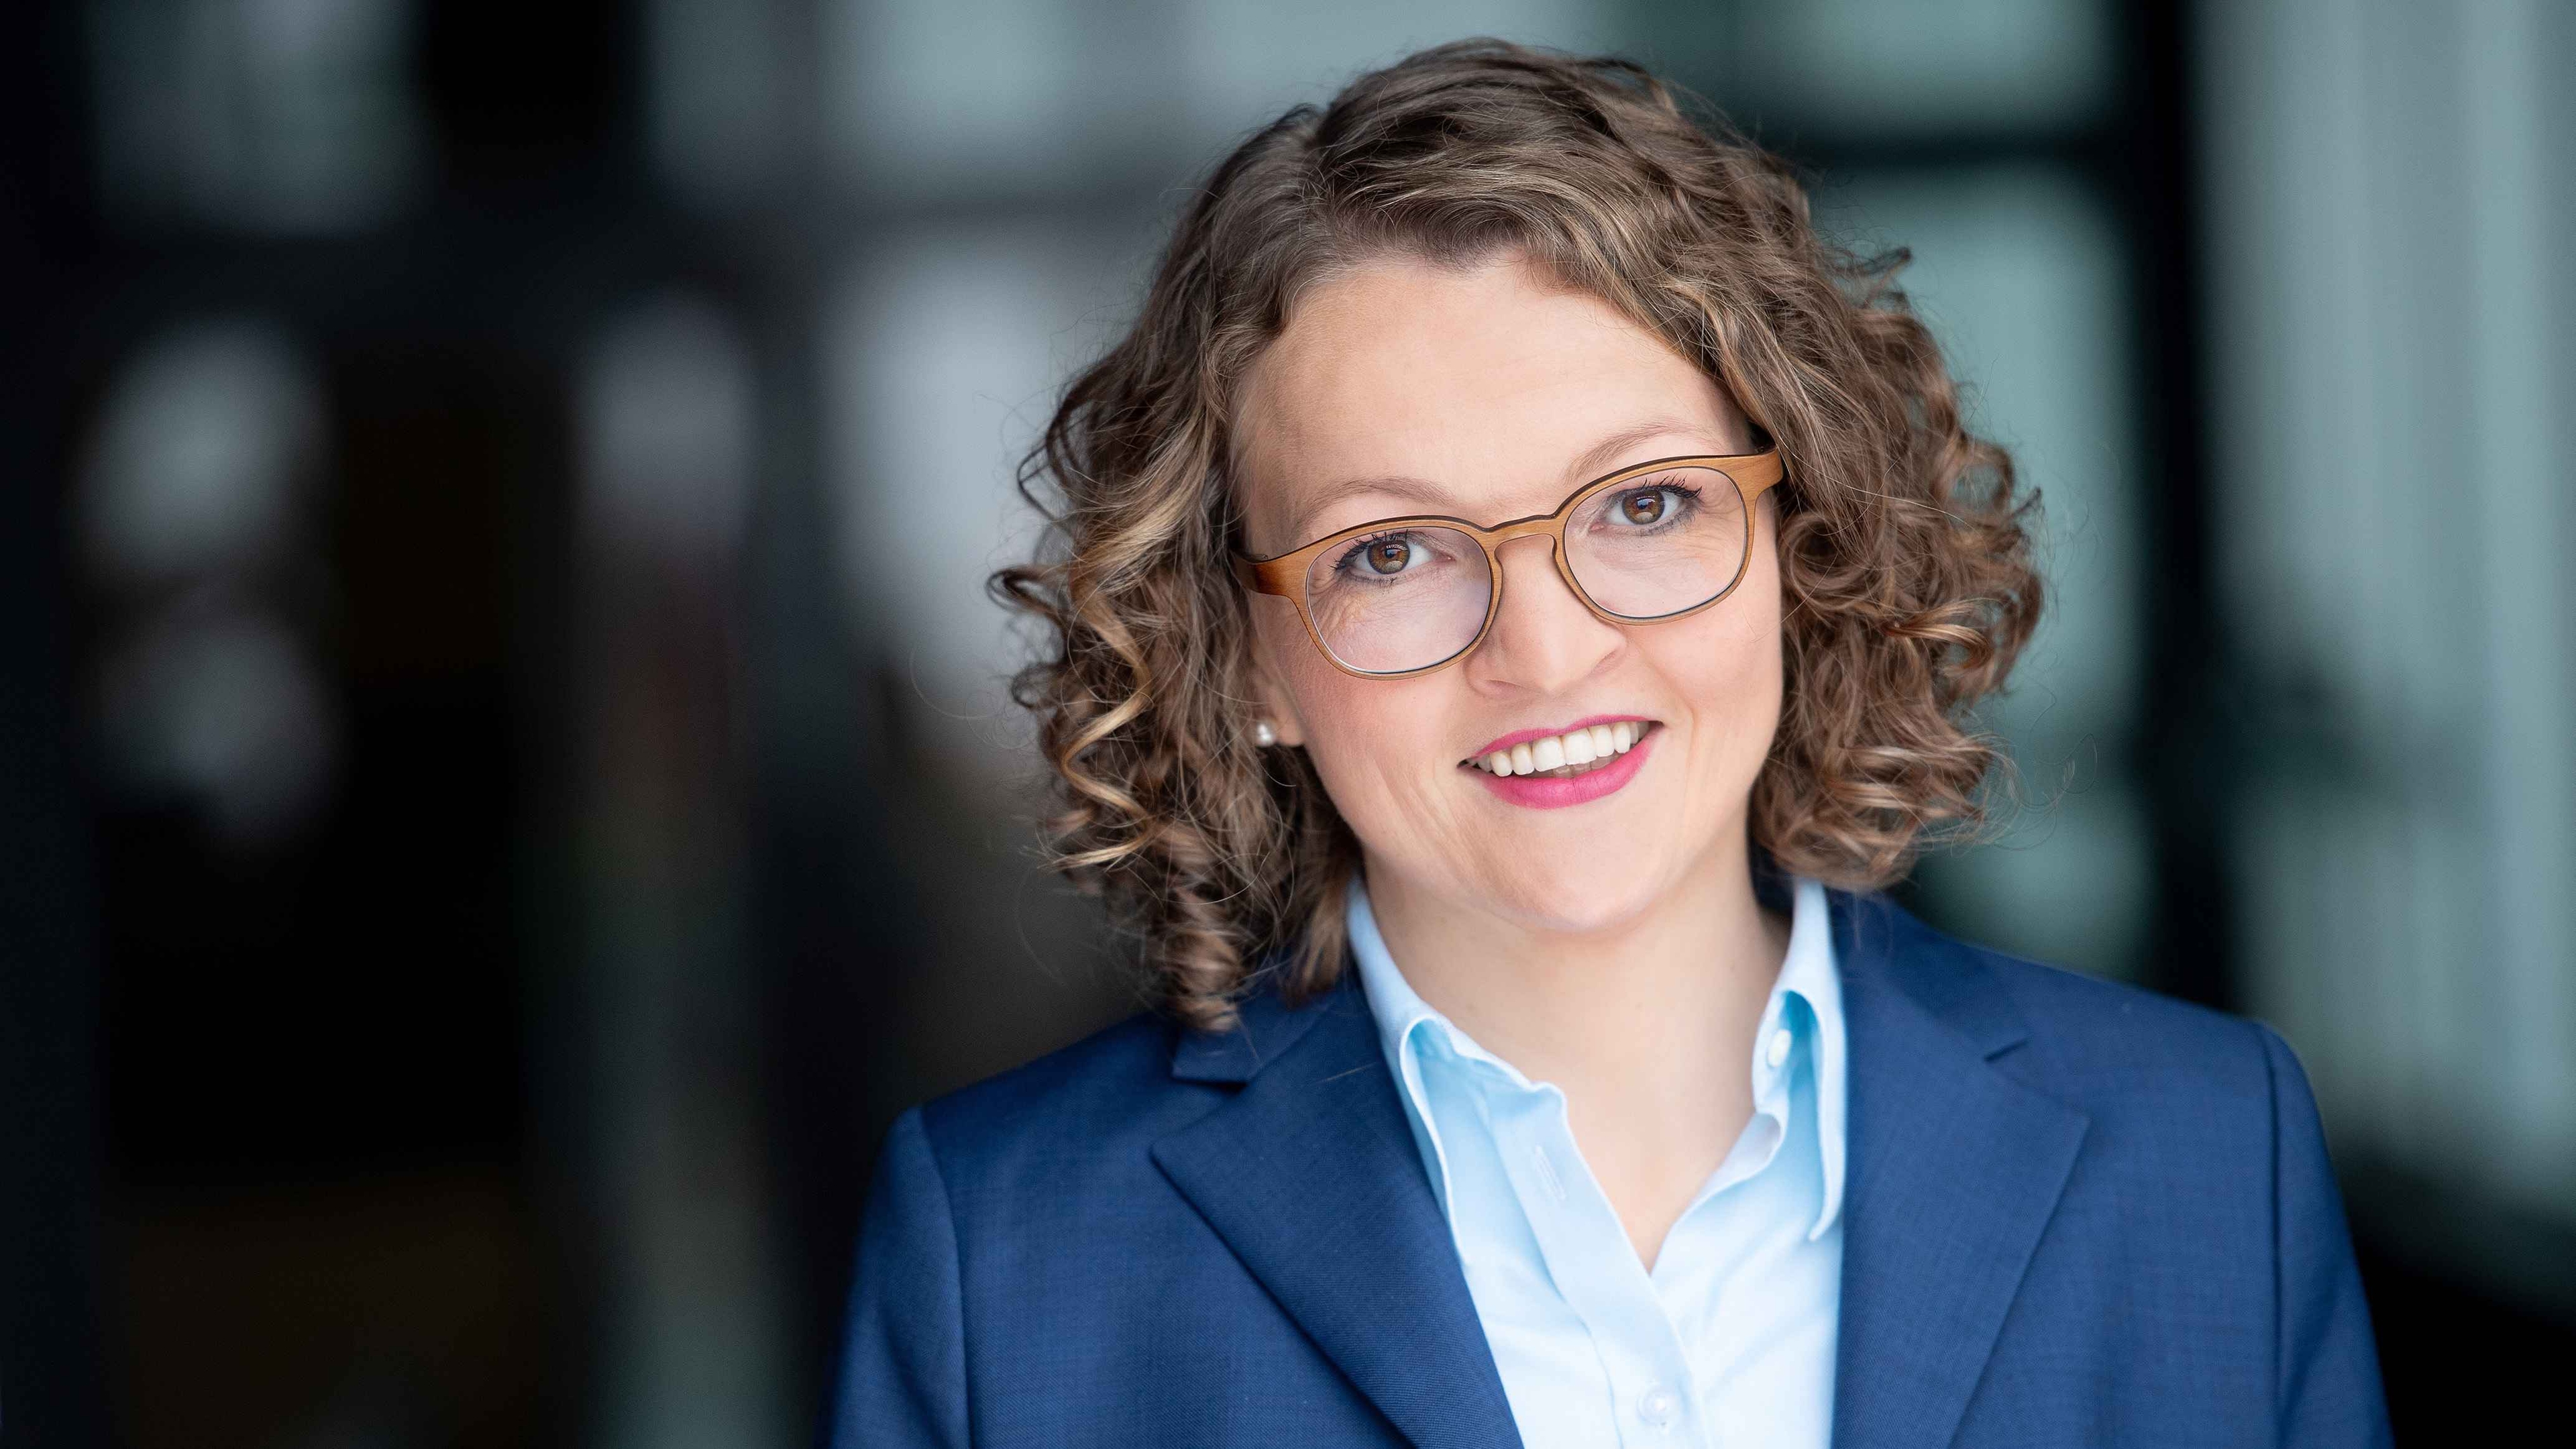 Anja Mellage übernimmt Geschäftsführung der rbb media GmbH